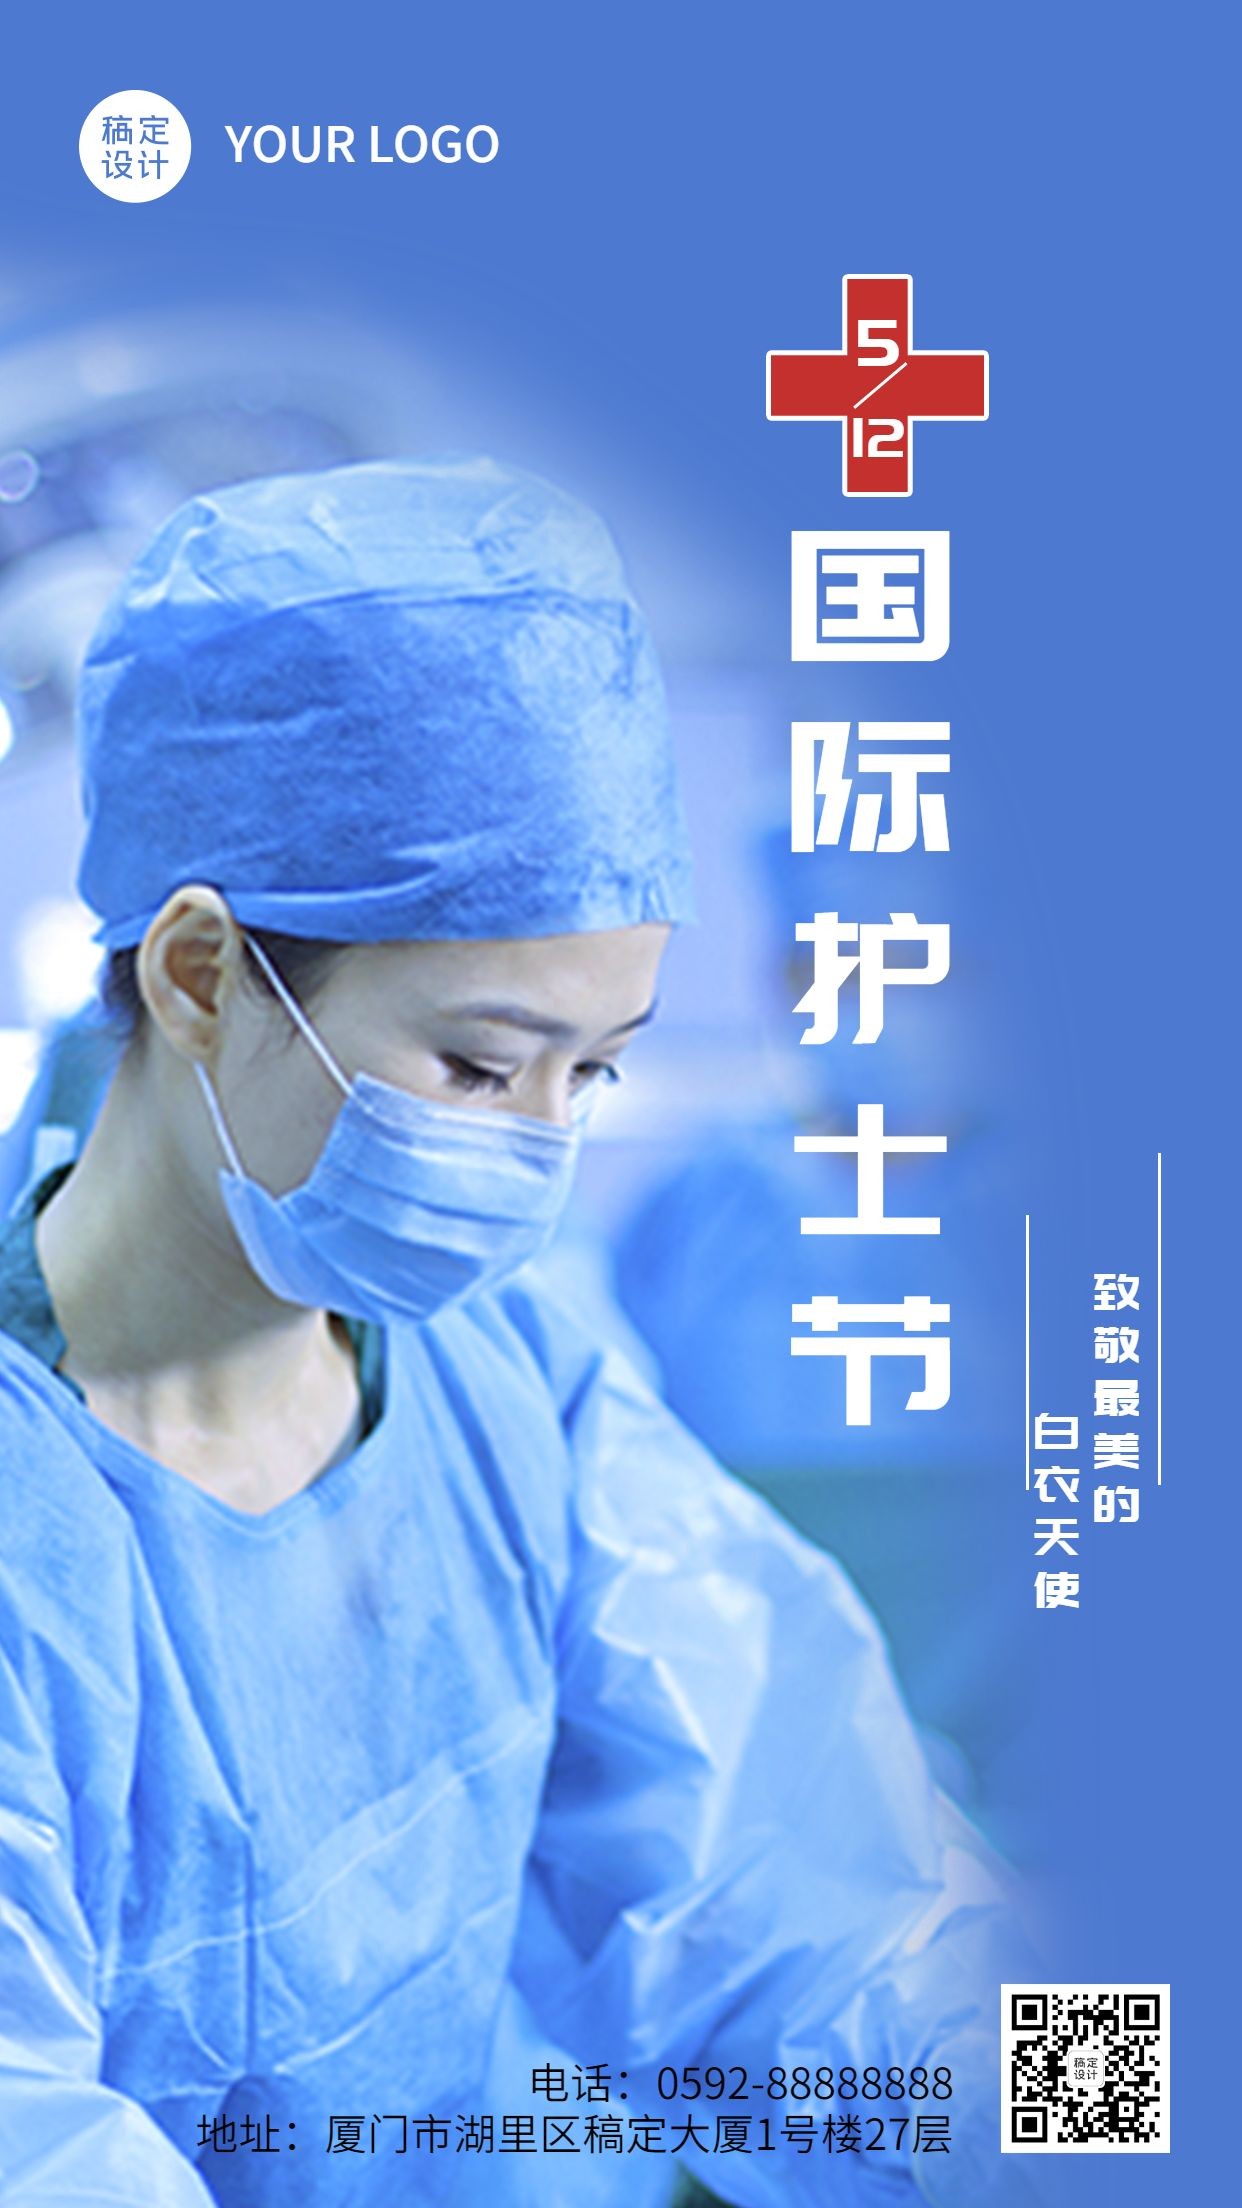 国际护士节节日宣传排版手机海报